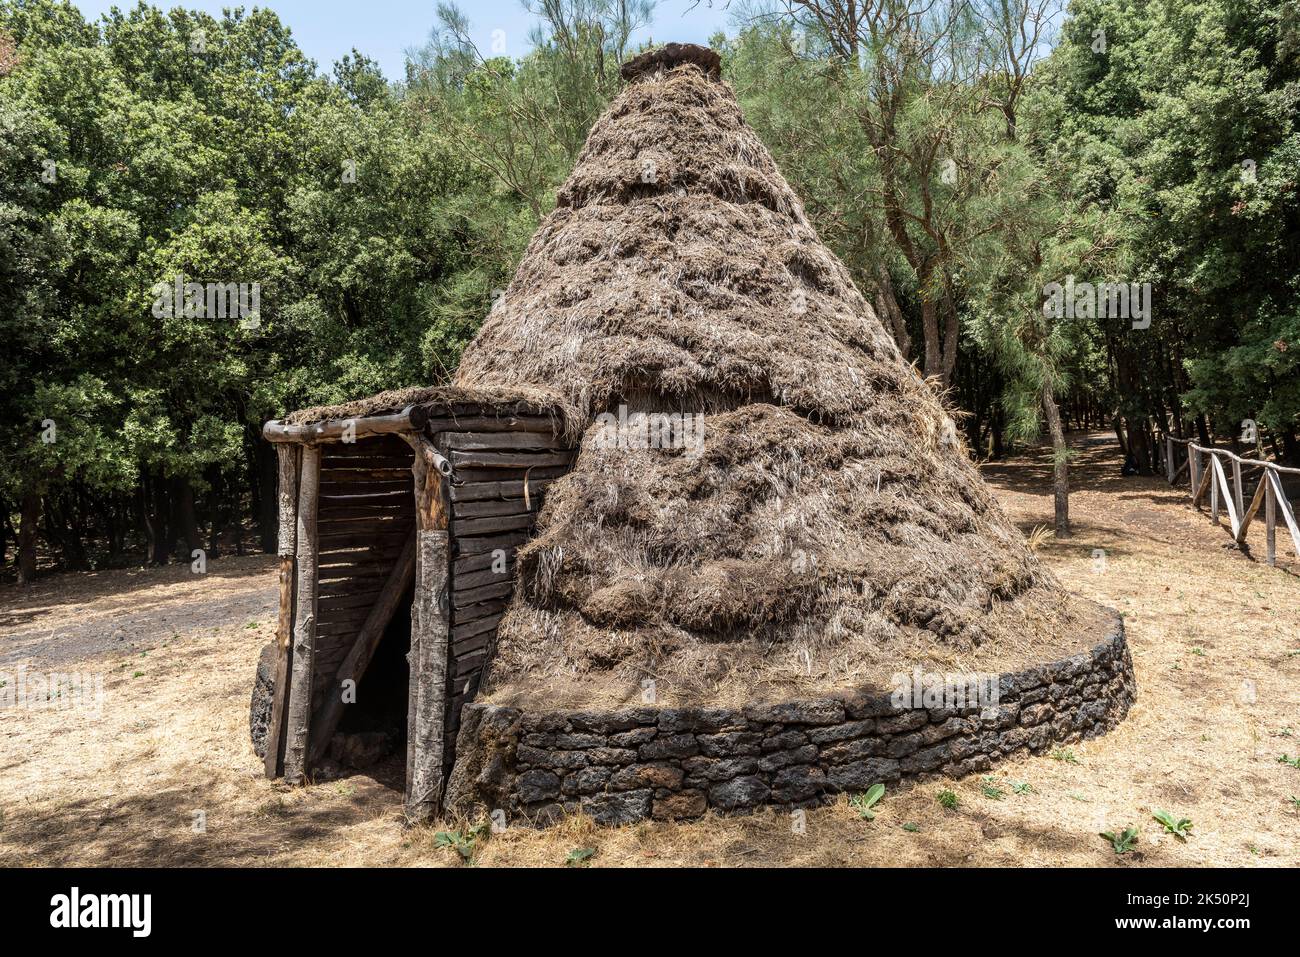 Eine pagghiaru oder konische reetgedeckte Hütte, die von Hirten und Kohleverbrennern verwendet wird, in den Wäldern an den Hängen des Ätna, Sizilien Stockfoto